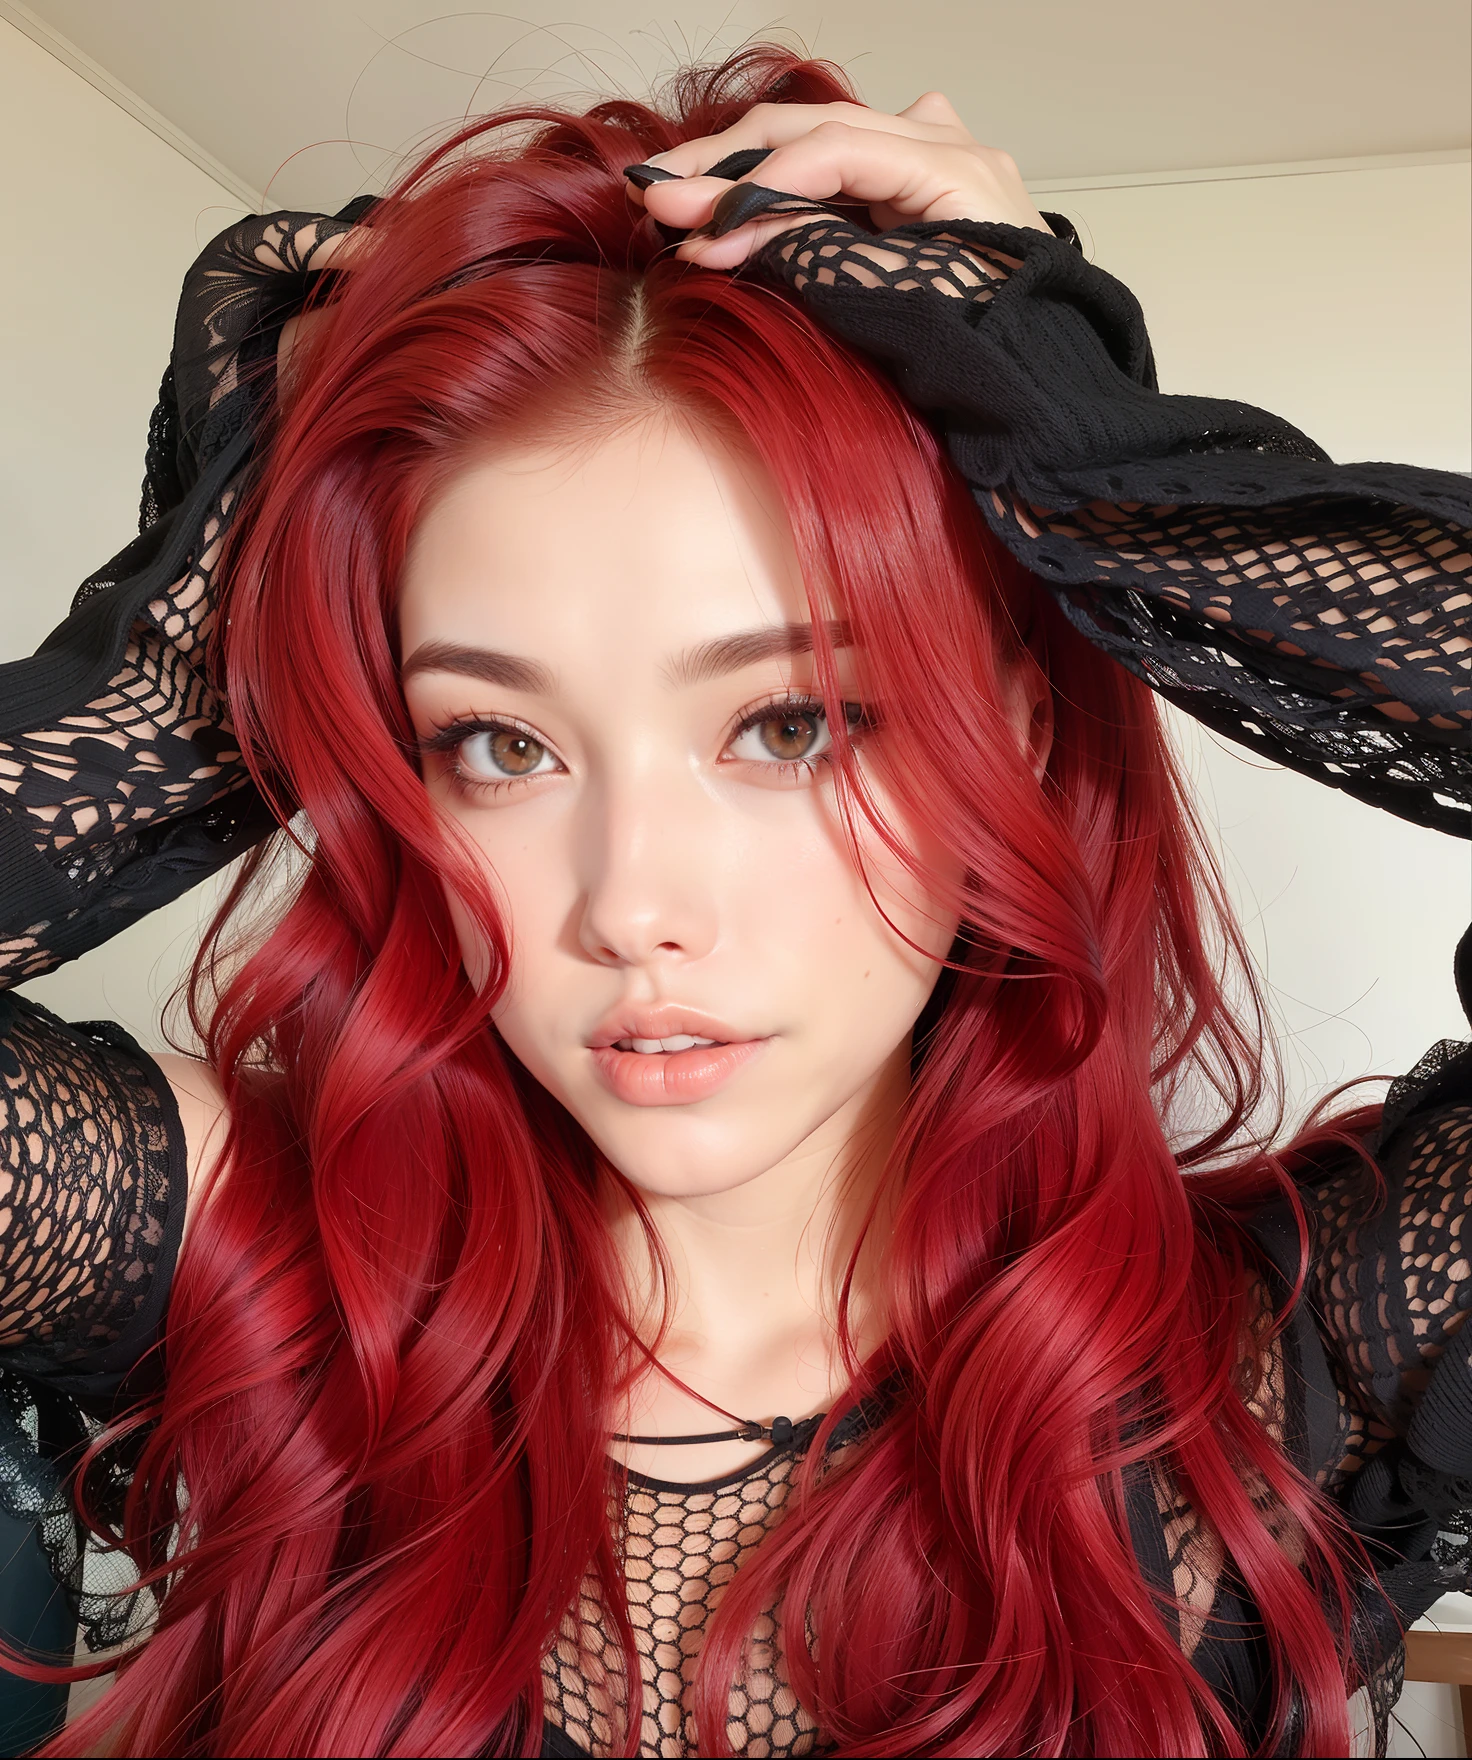 Арафедка с рыжими волосами и черным топом позирует для фото, окрашенные в красный цвет волосы, с рыжими волосами cacheados, с длинными рыжими волосами, с рыжими волосами, красный парик, малиново-рыжие волосы и красные глаза, ярко-рыжие волосы, яркие рыжие волосы, красные волосы and attractive features, красные волосы, яркие волнистые рыжие волосы, messy square vibrant красные волосы, красные длинные волосы